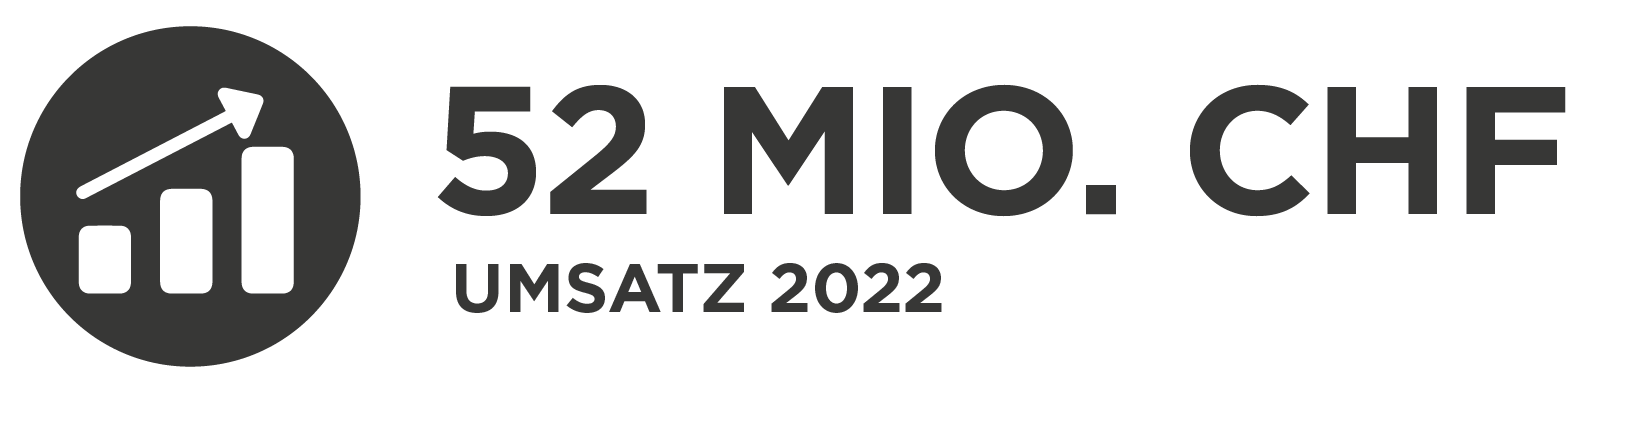 InfoGuard Umsatz 2022